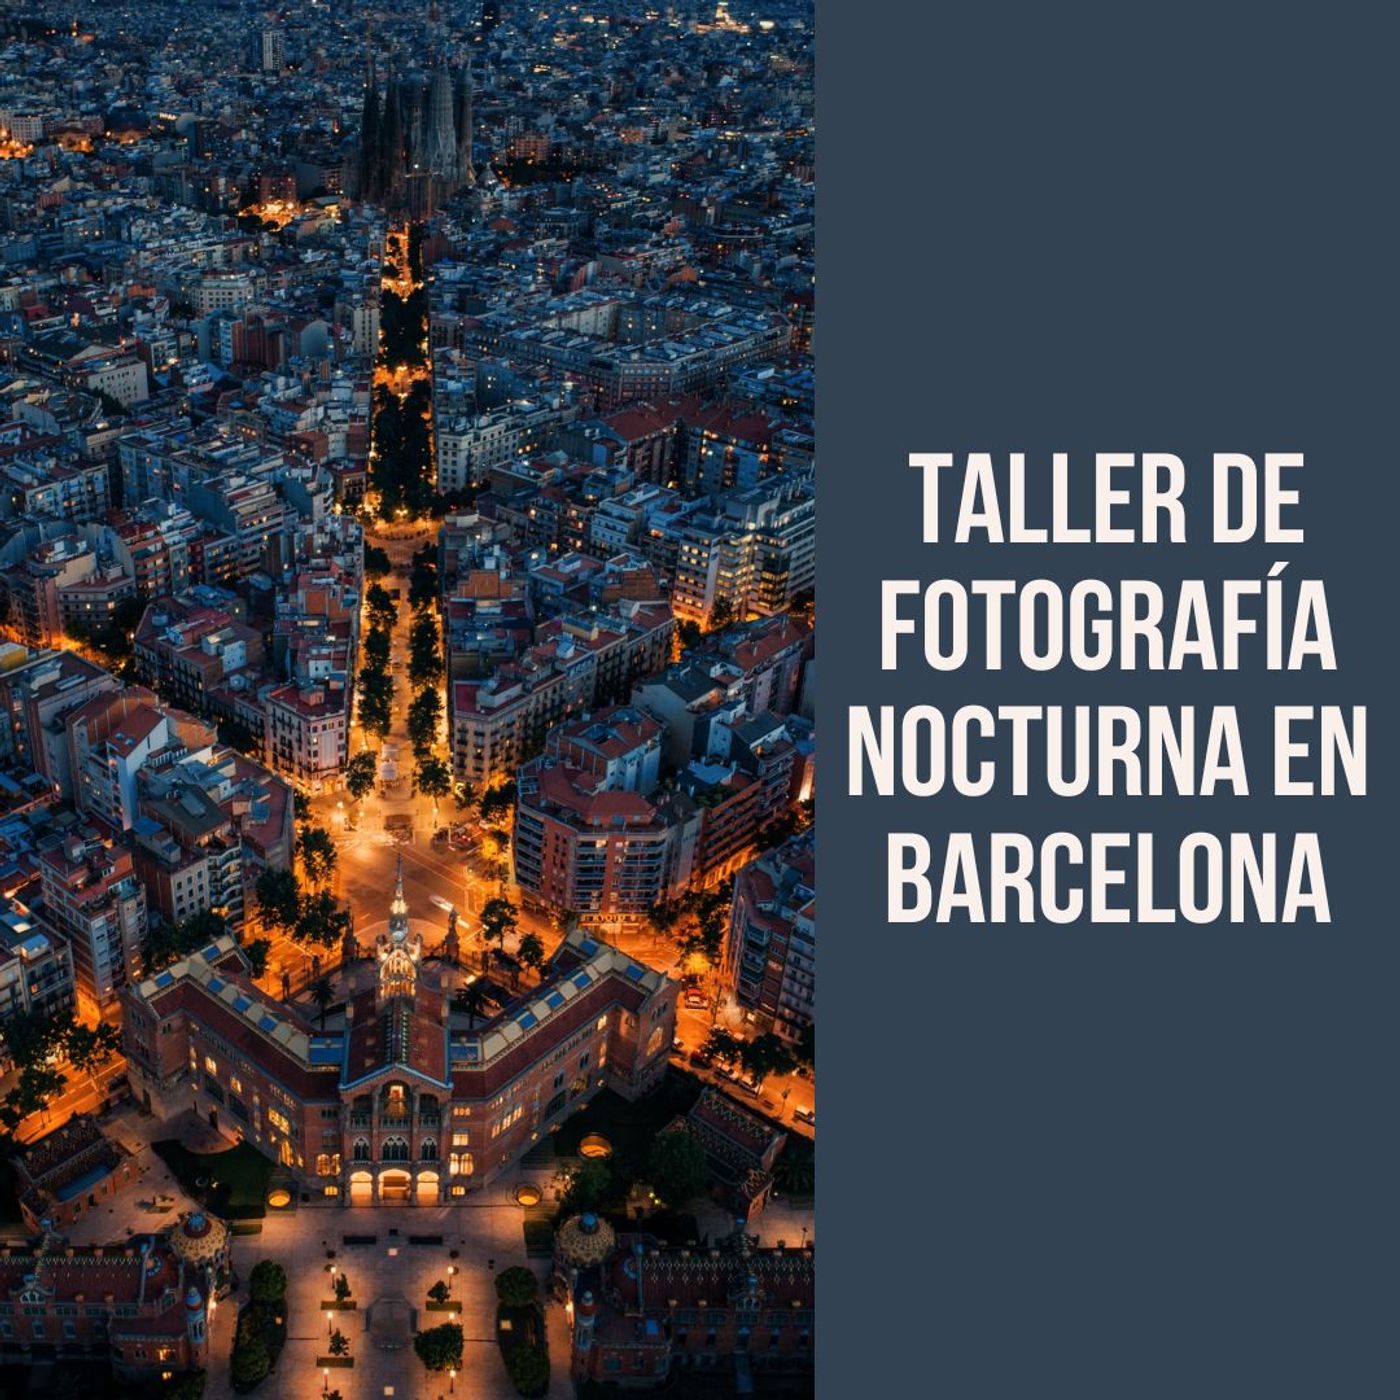 Taller de fotografía nocturna en Barcelona